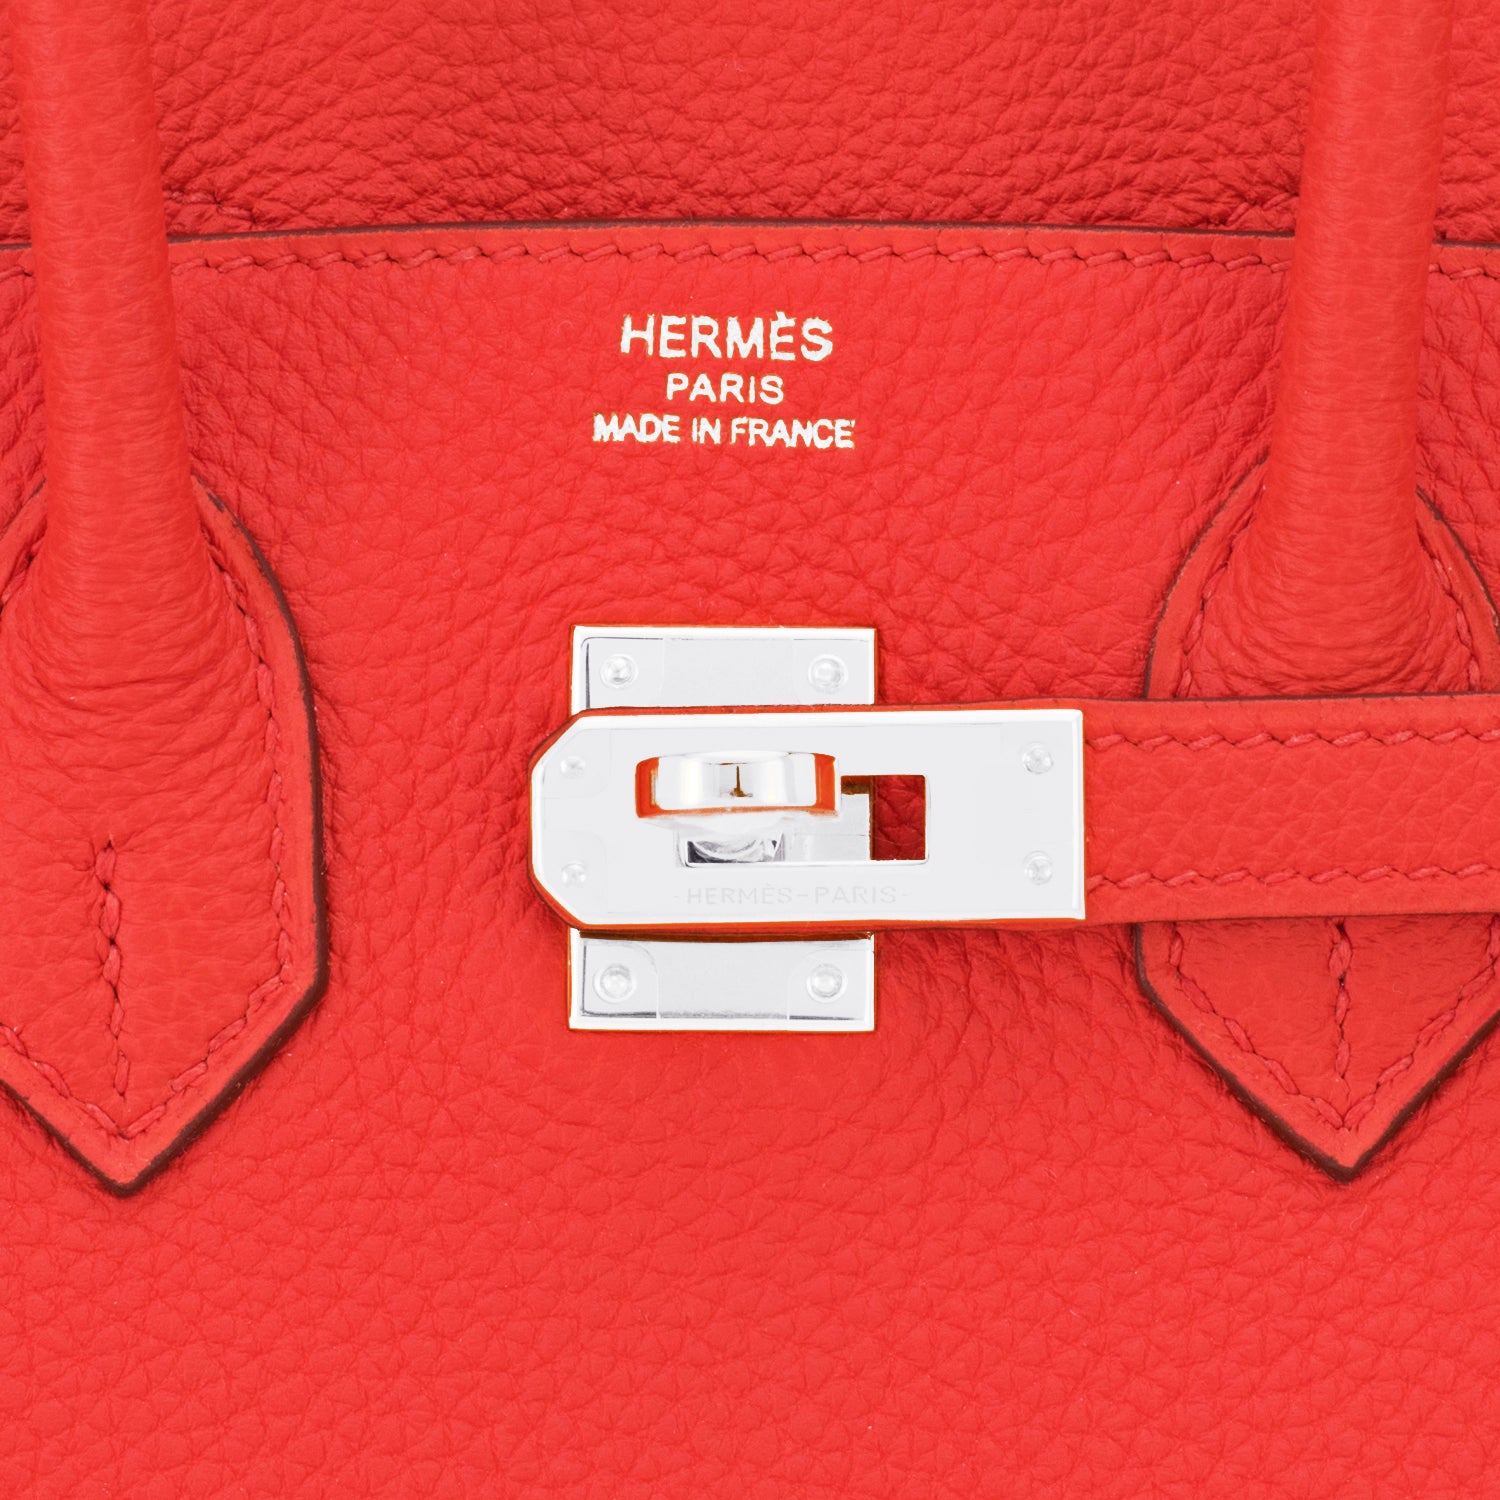 Hermes Birkin 35 Capucine Bag Gold Hardware Togo Leather For Sale